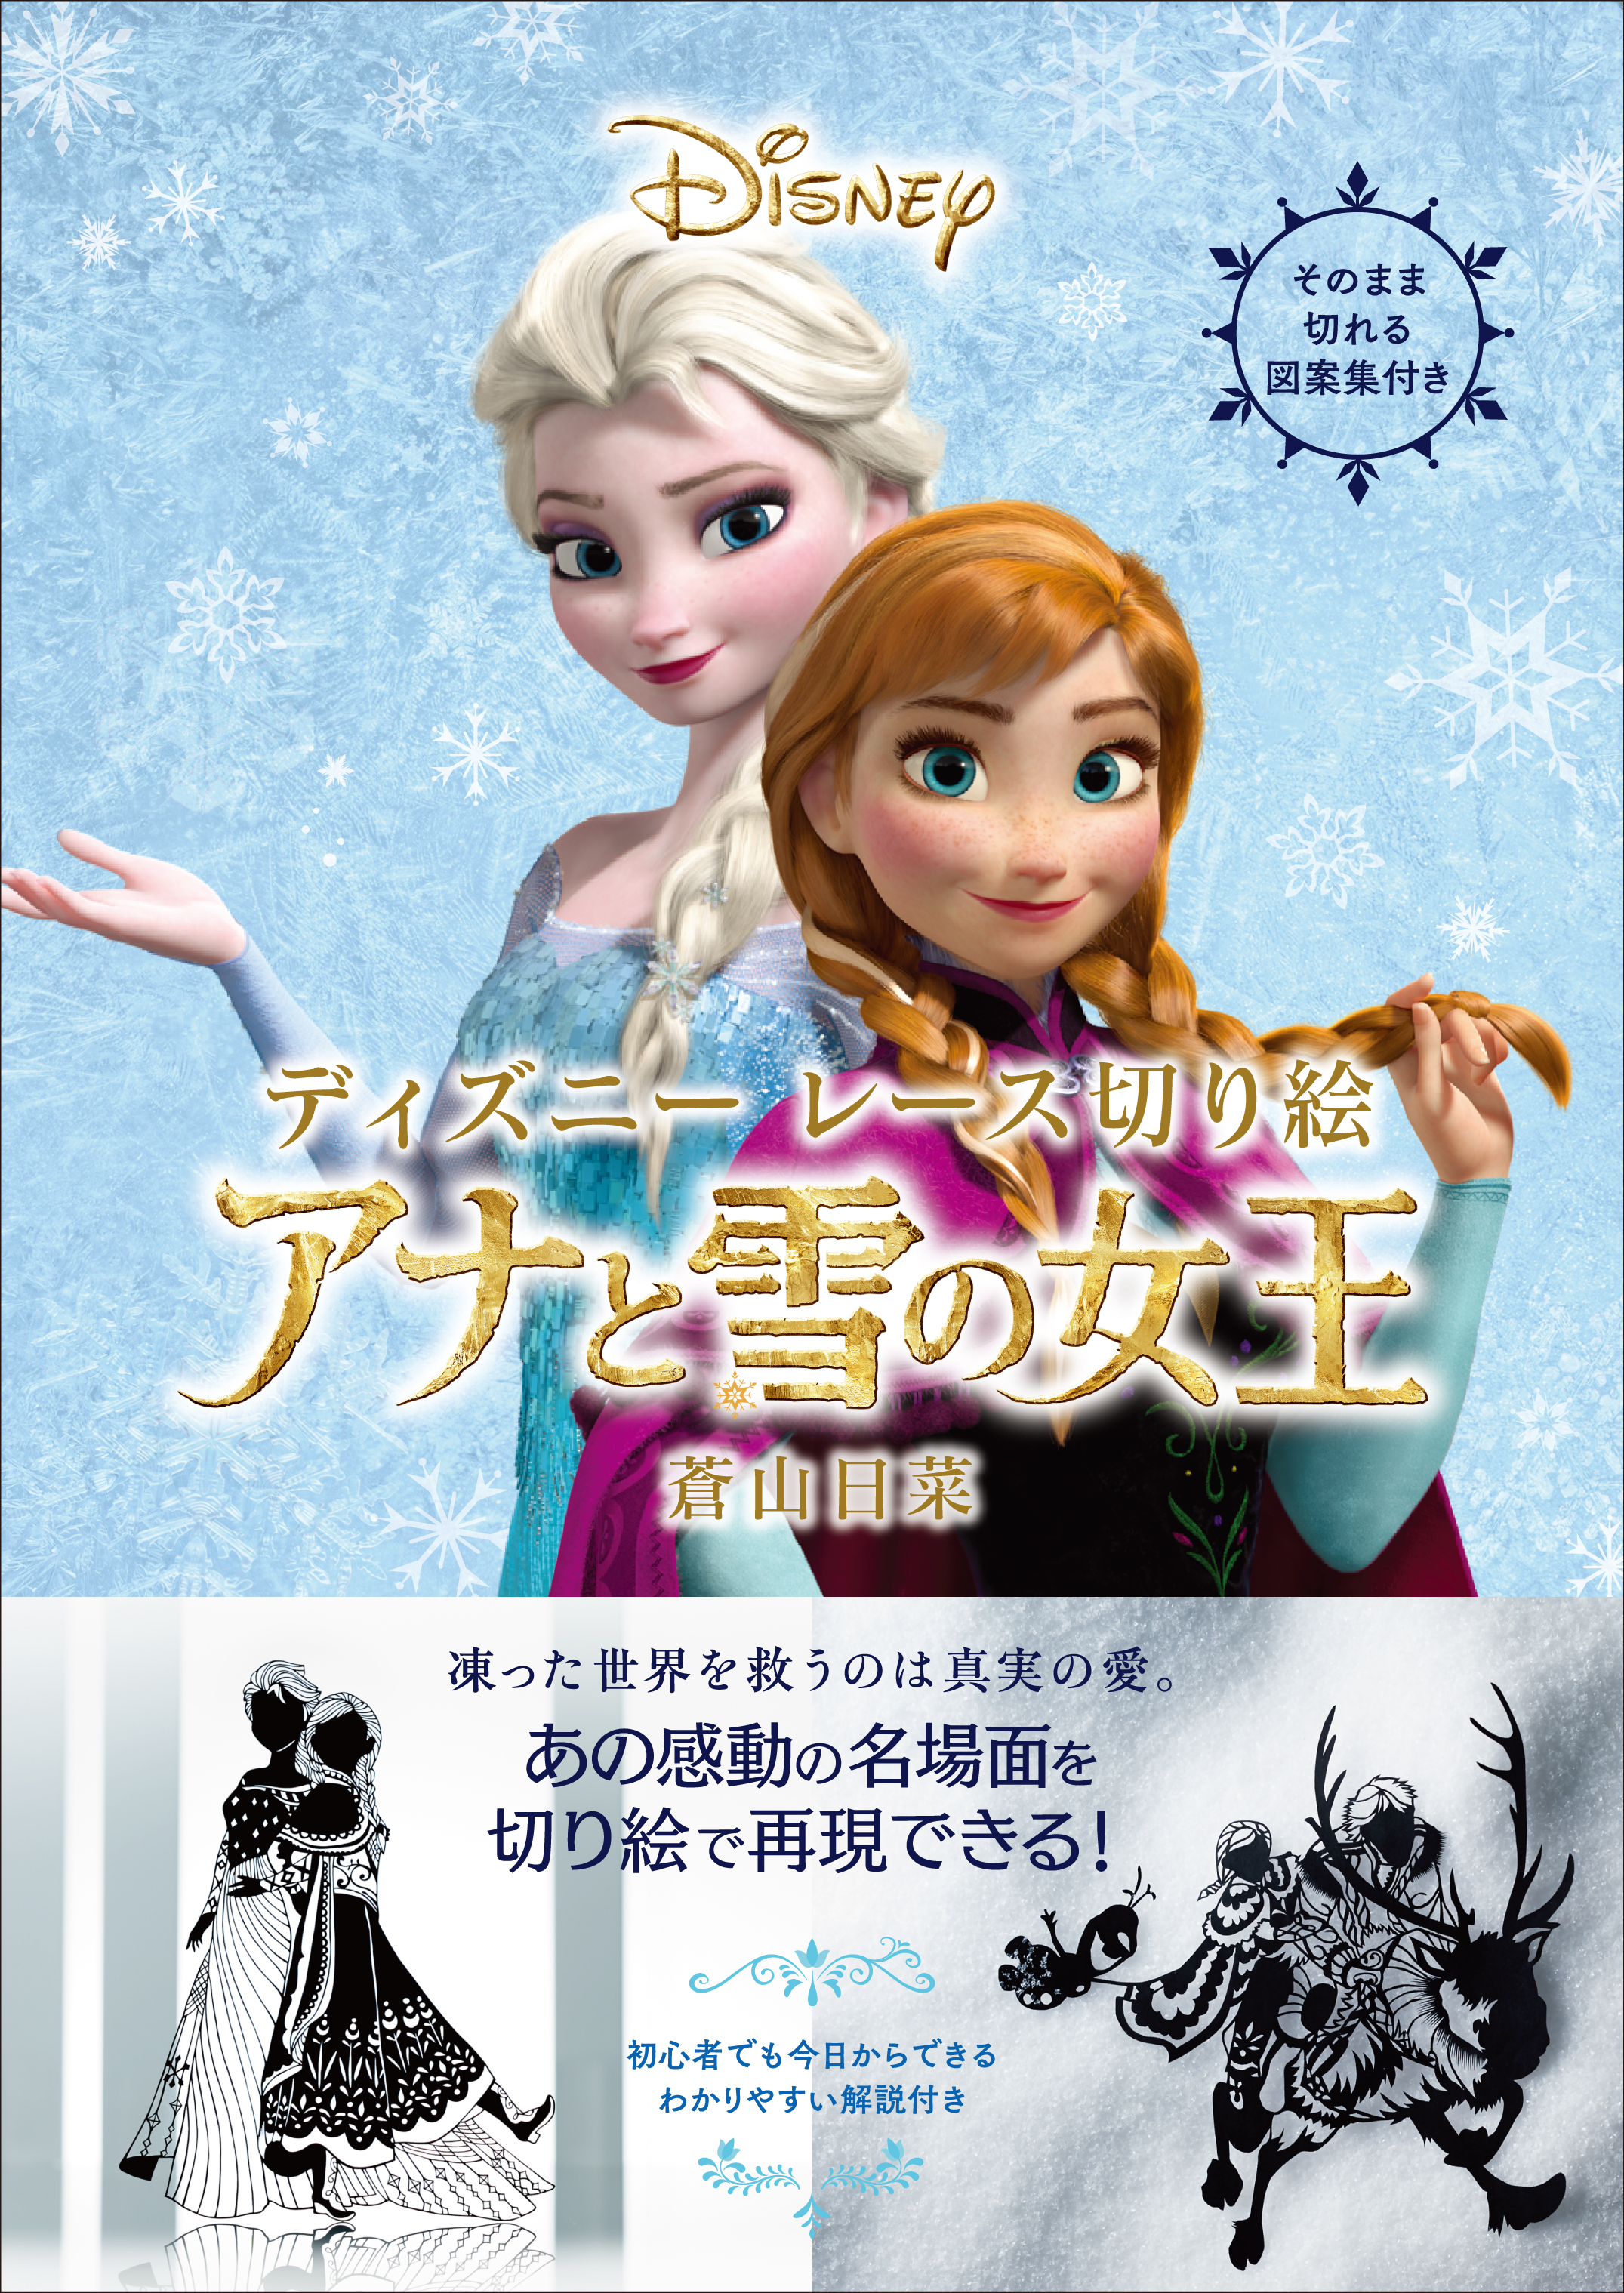 ぬりえブームの次は レース切り絵 ディズニーの大人気映画 アナと雪の女王 の世界を切り絵で表現 ディズニーレース切り絵 アナと雪の女王 6月23日発売 株式会社kadokawaのプレスリリース